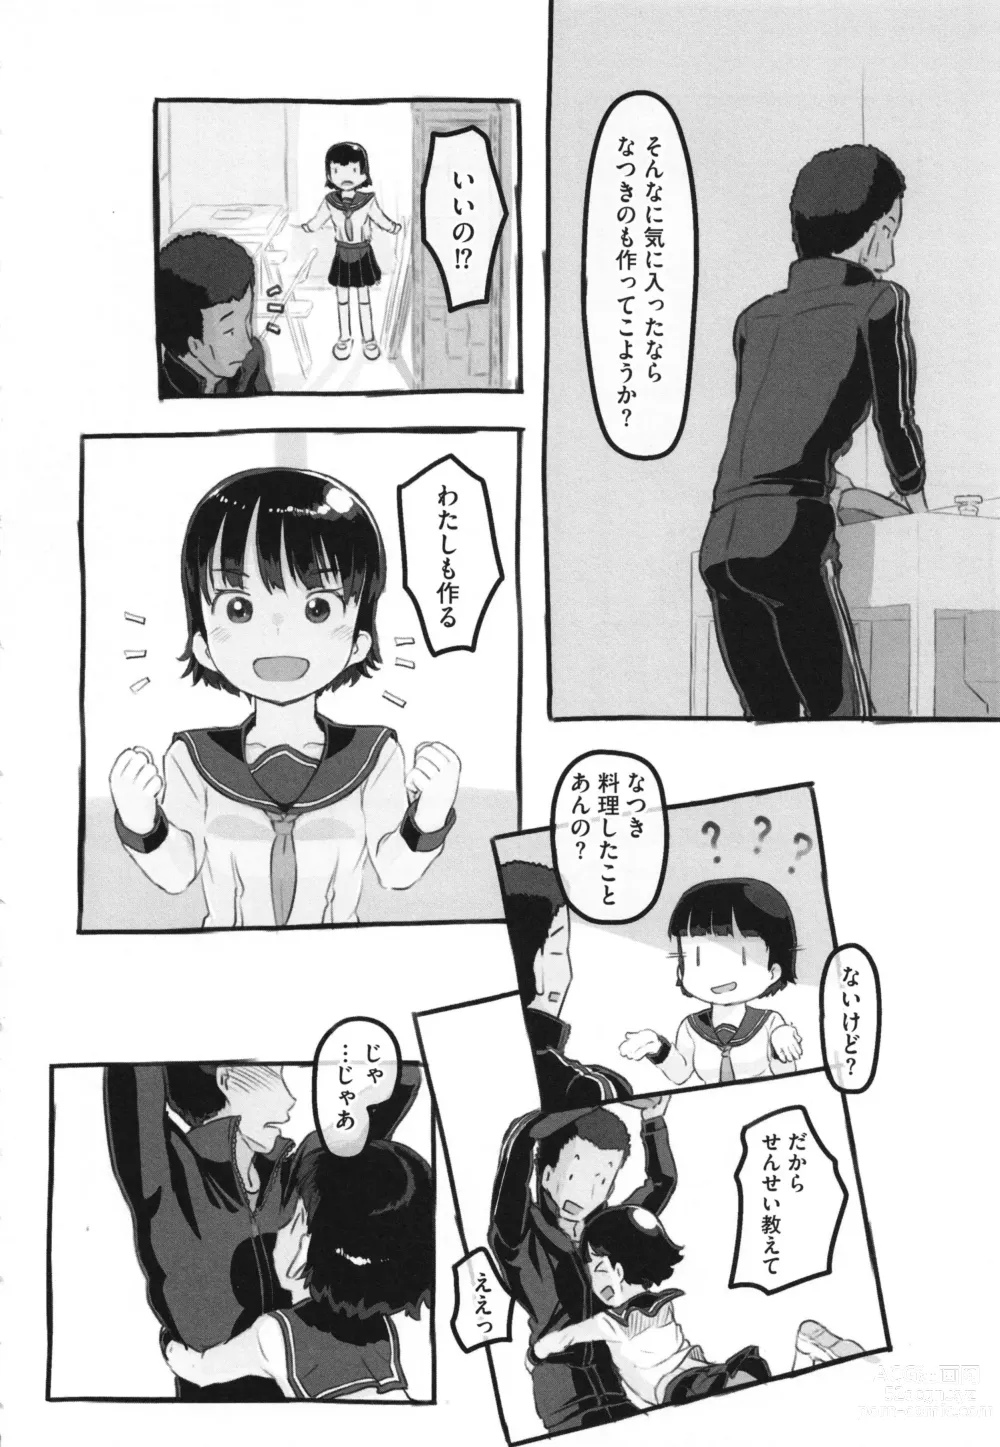 Page 219 of manga Kanojo wa Mada Kaette Inai